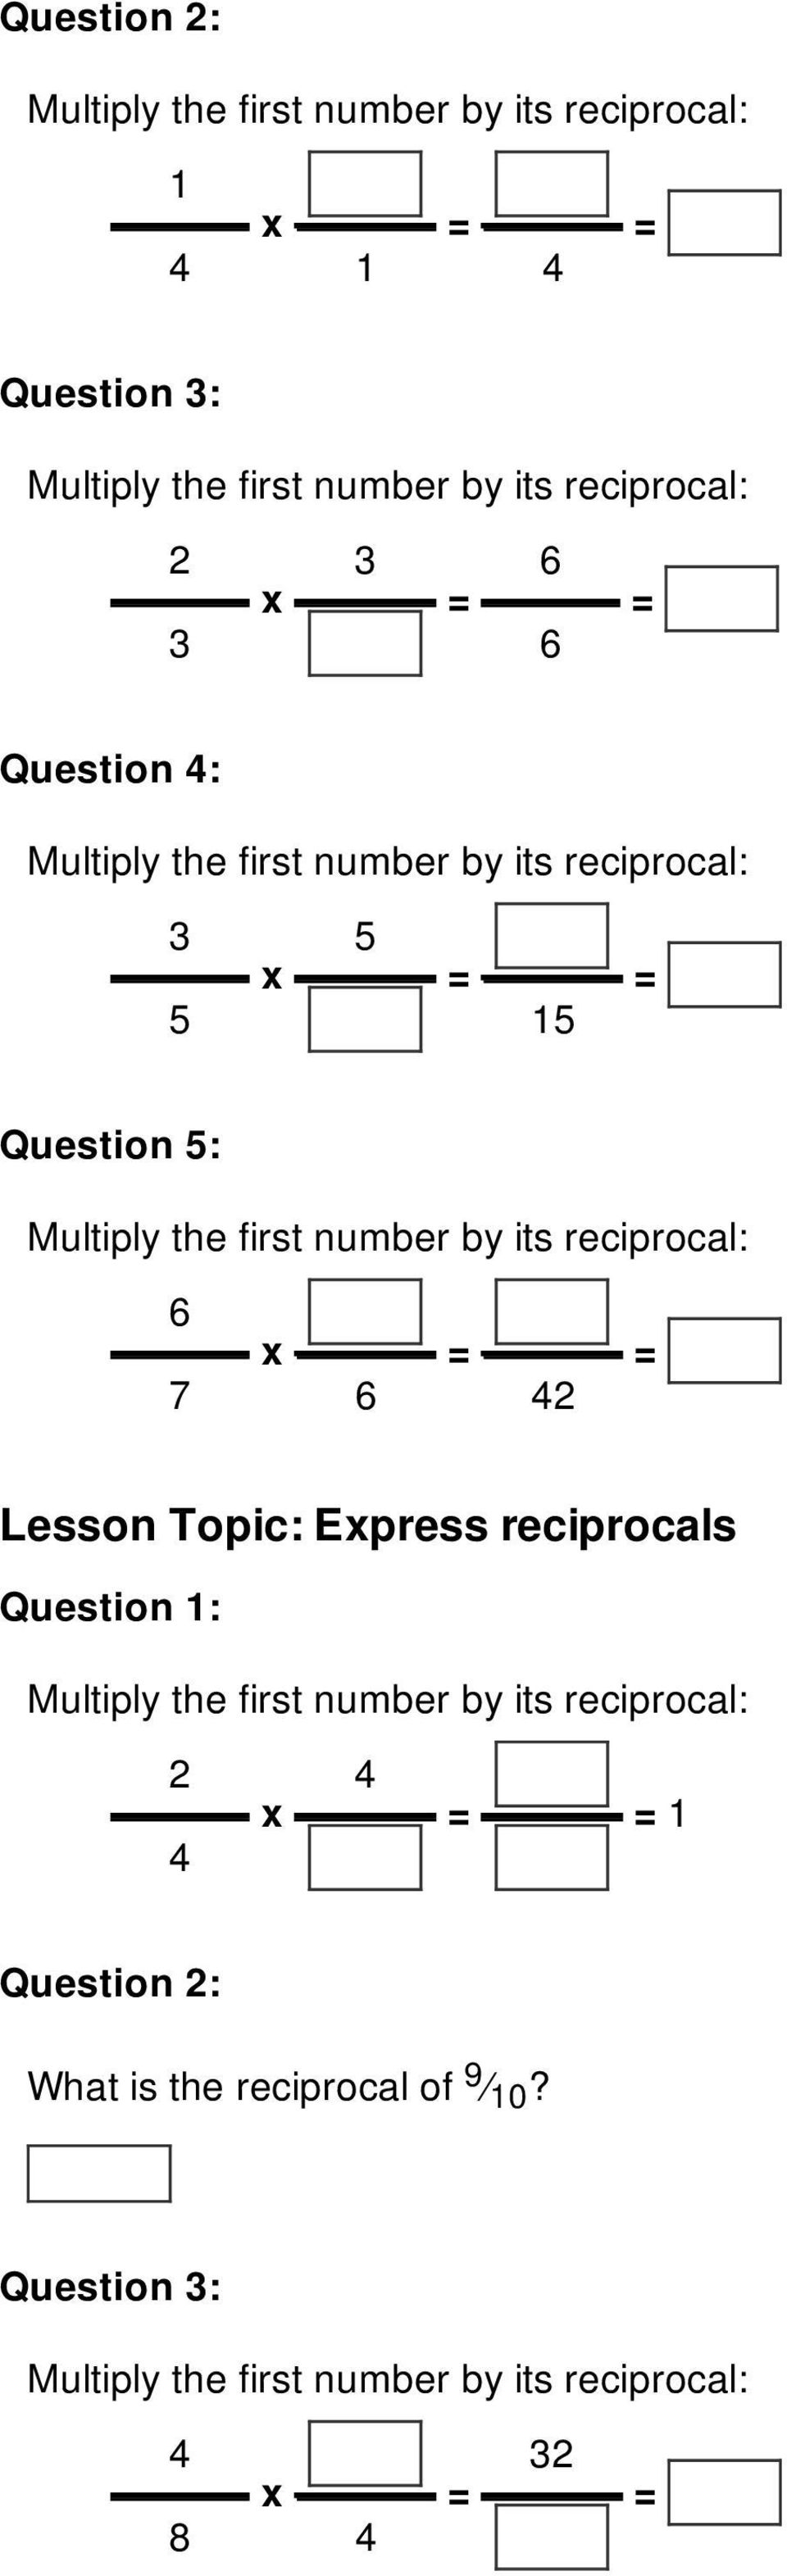 Express reciprocals 2 x = = 1